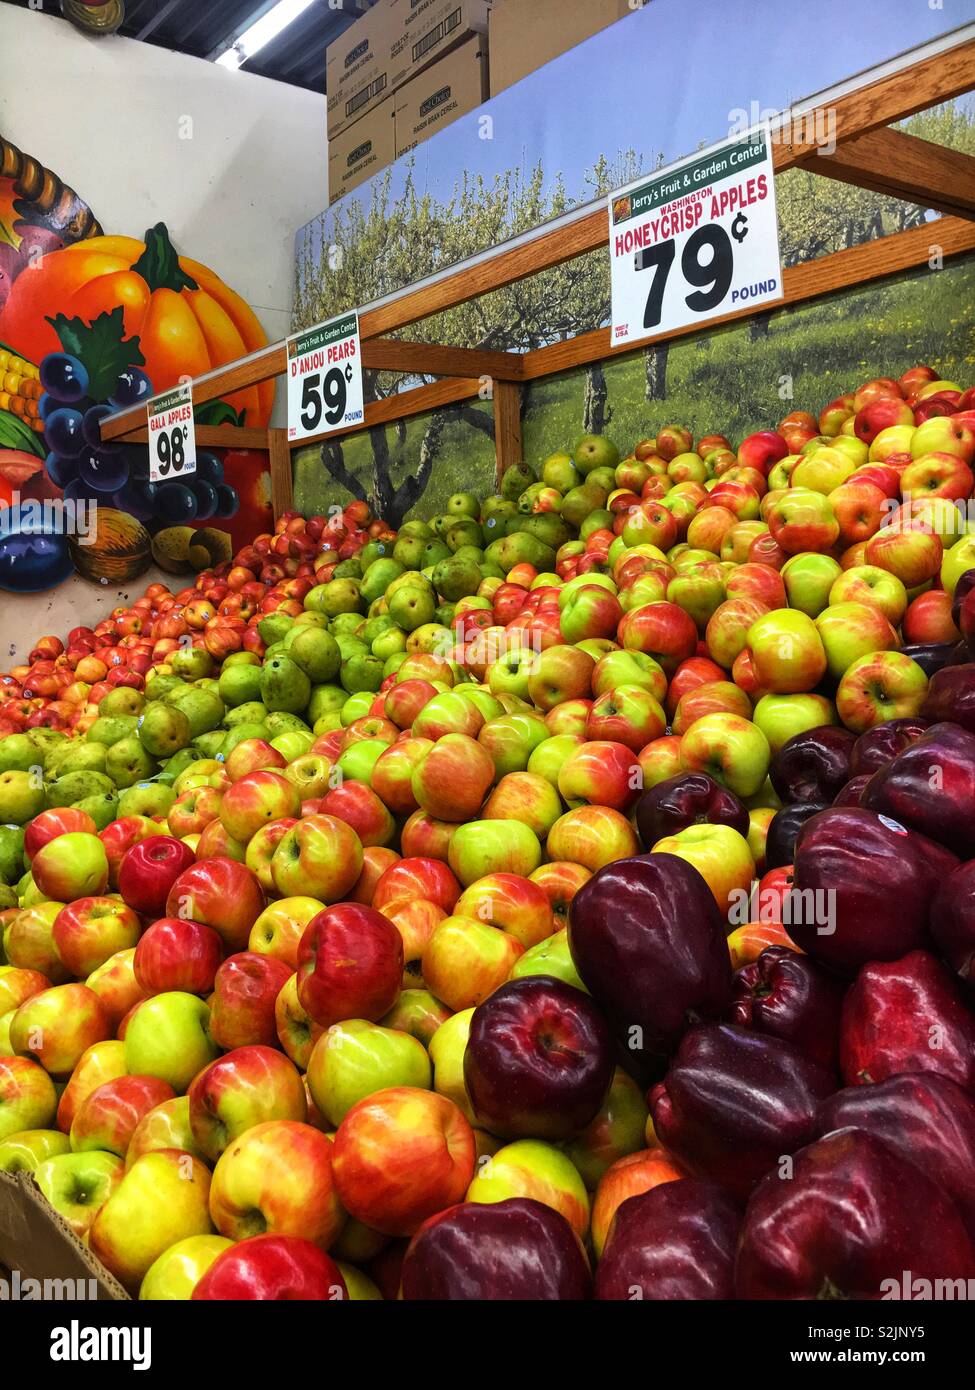 Frischen Apfel Abschnitt auf lokaler Anbieter produzieren, die angezeigt wird, rote und gelbe Honig frische, grüne Granny Smith, und Red Delicious äpfel. Stockfoto